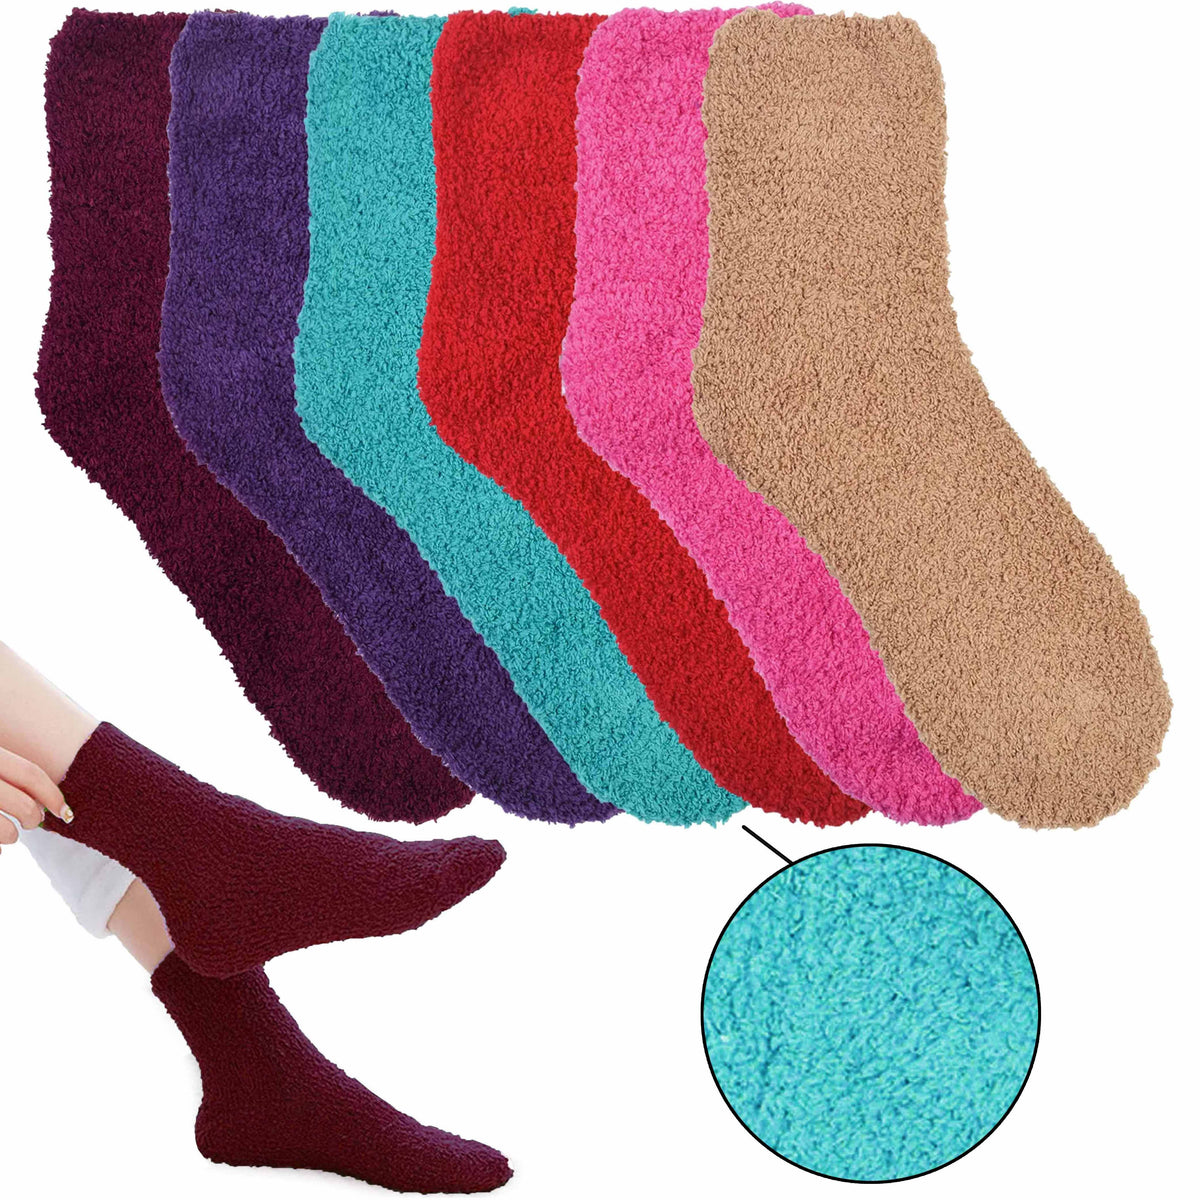 Cozy Warm Slipper Socks Crochet Pattern – Leelee Knits